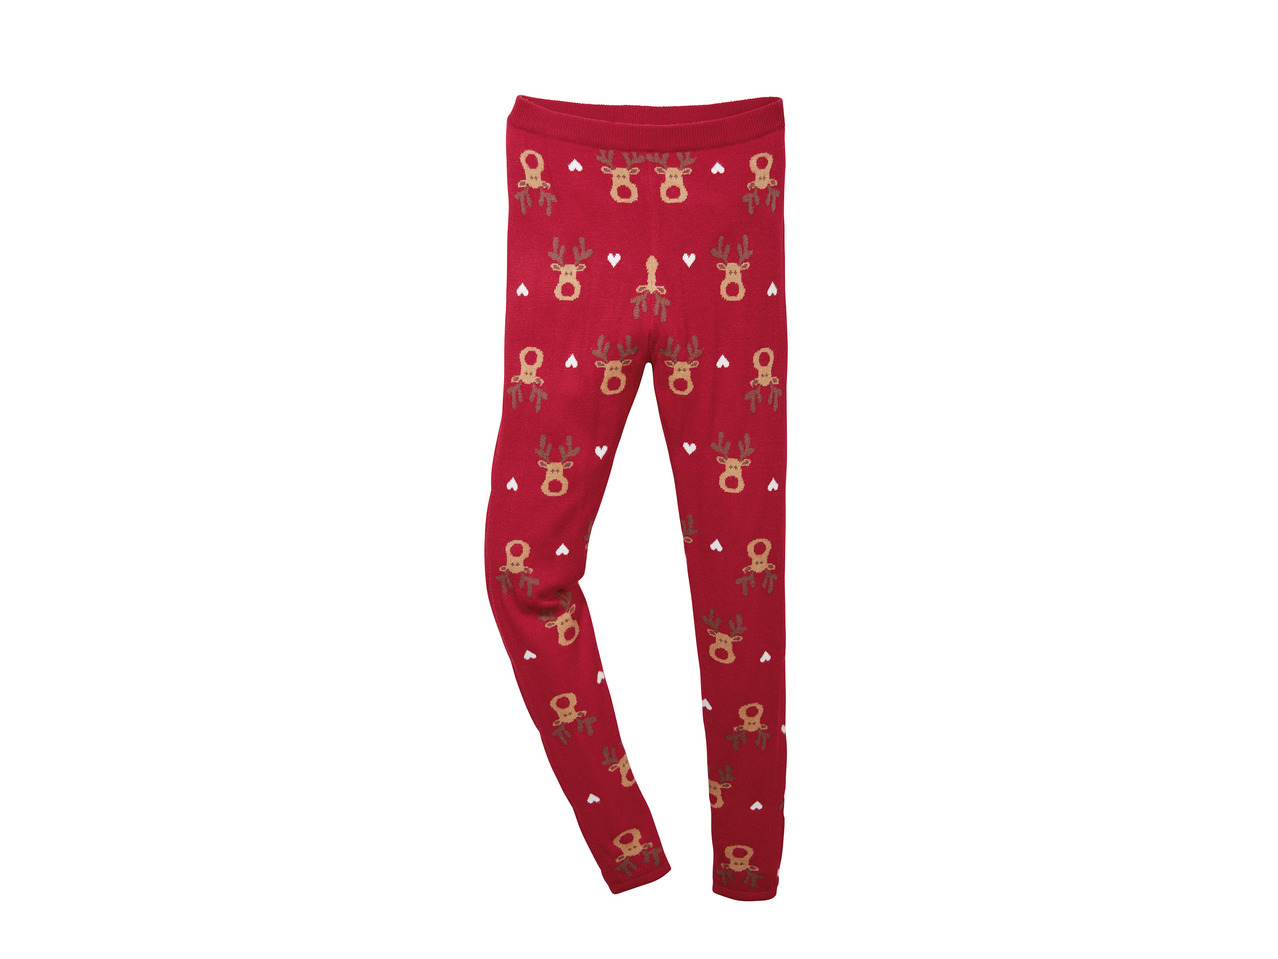 Pepperts Children's Christmas Trousers or Leggings1